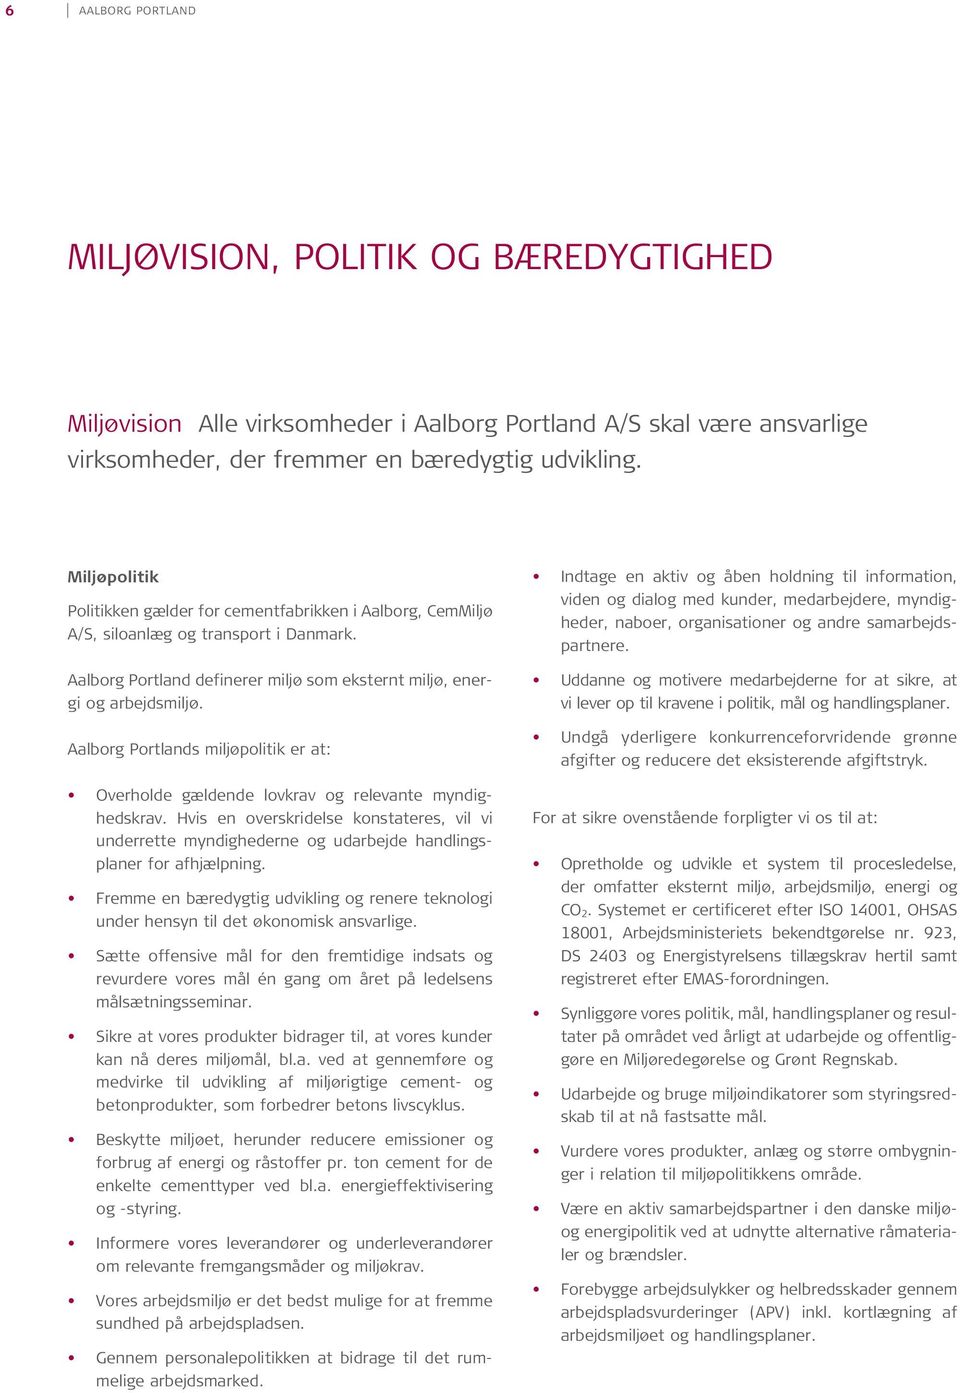 Aalborg Portlands miljøpolitik er at: Overholde gældende lovkrav og relevante myndighedskrav.